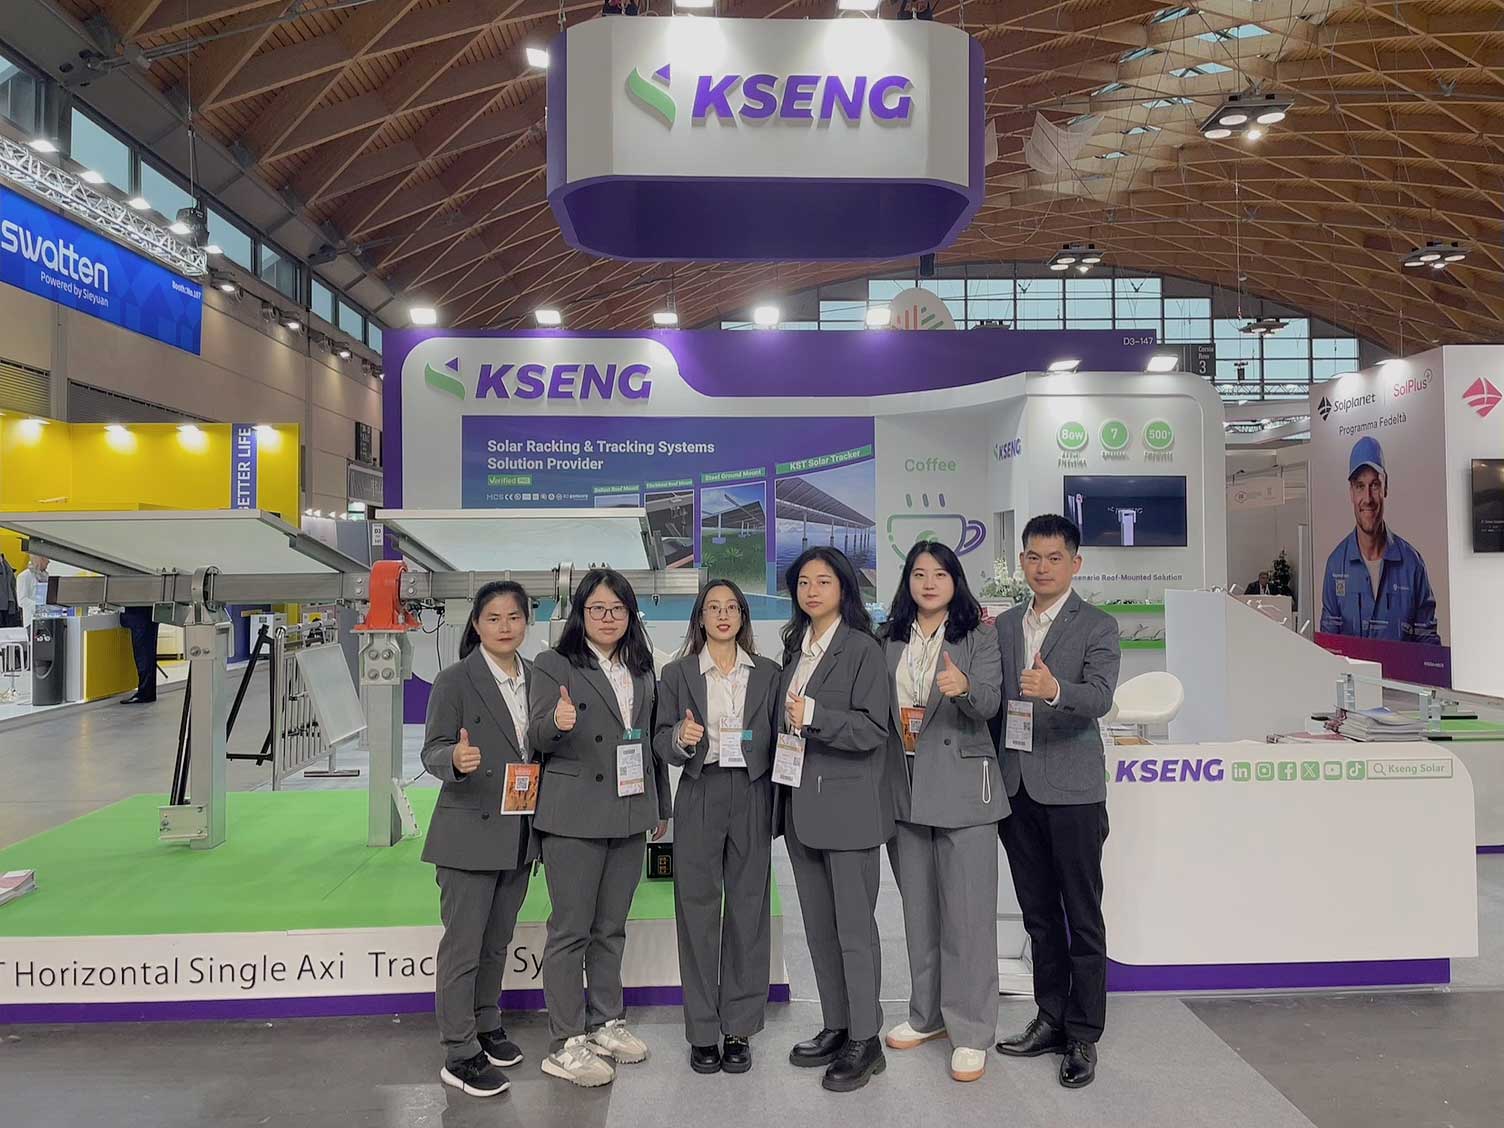 Kseng Solar, 혁신적인 태양광 랙 솔루션으로 유럽 5개 박람회에서 놀라운 인상을 남김